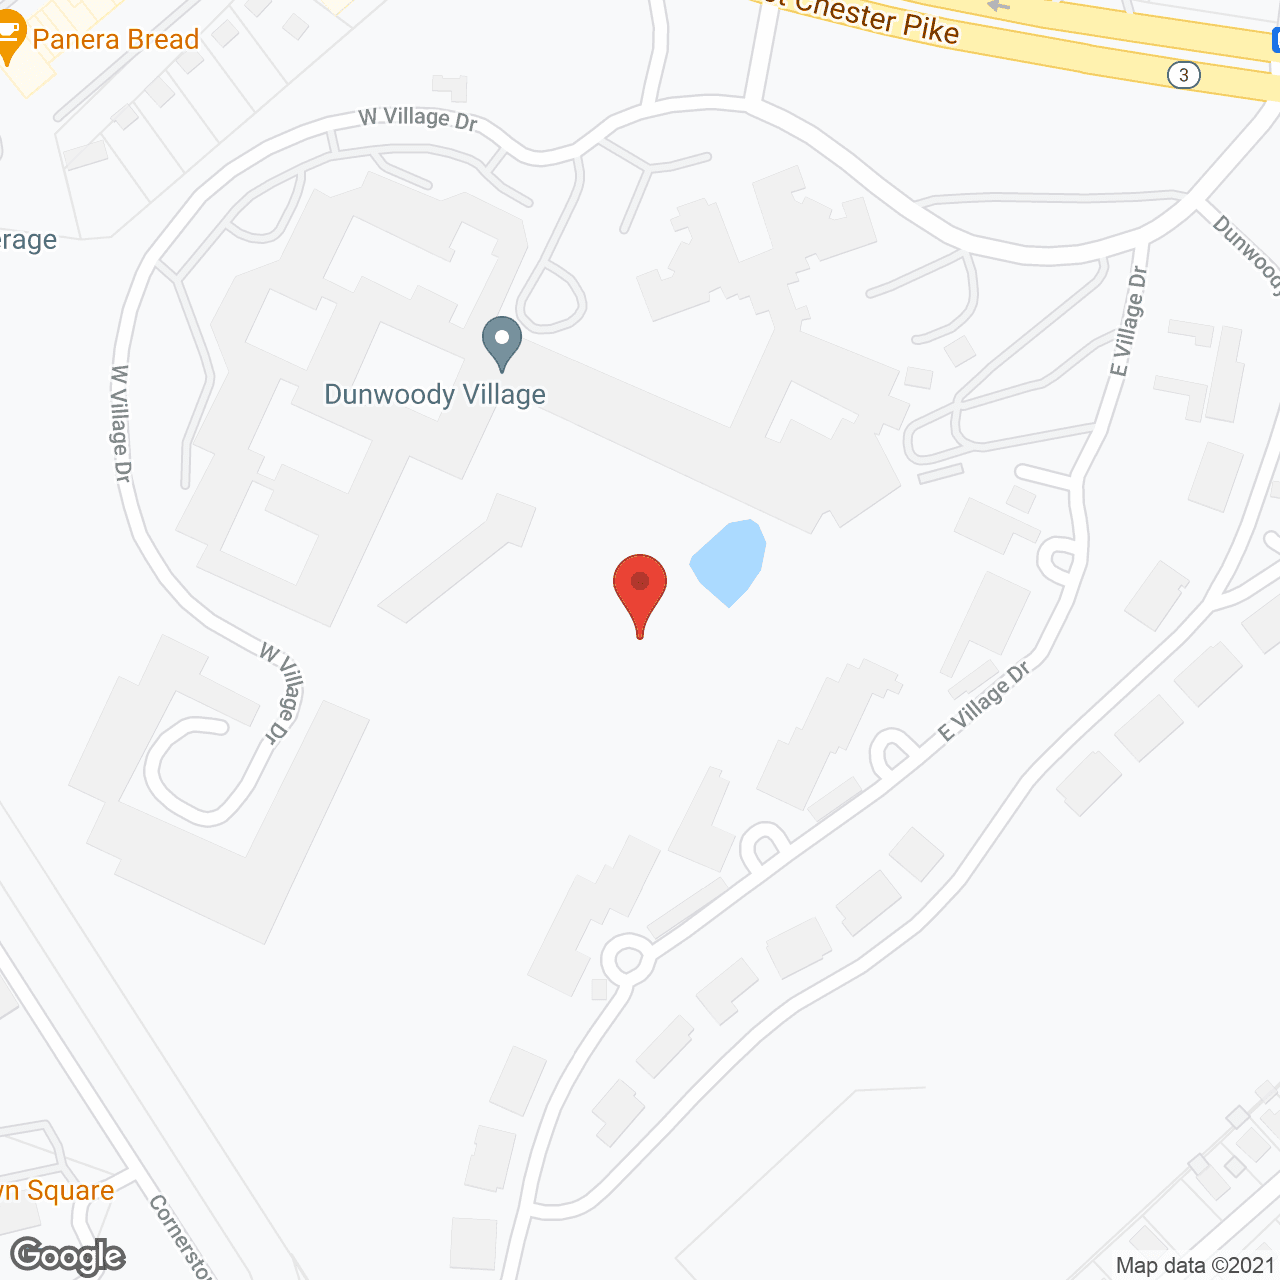 Dunwoody Village in google map